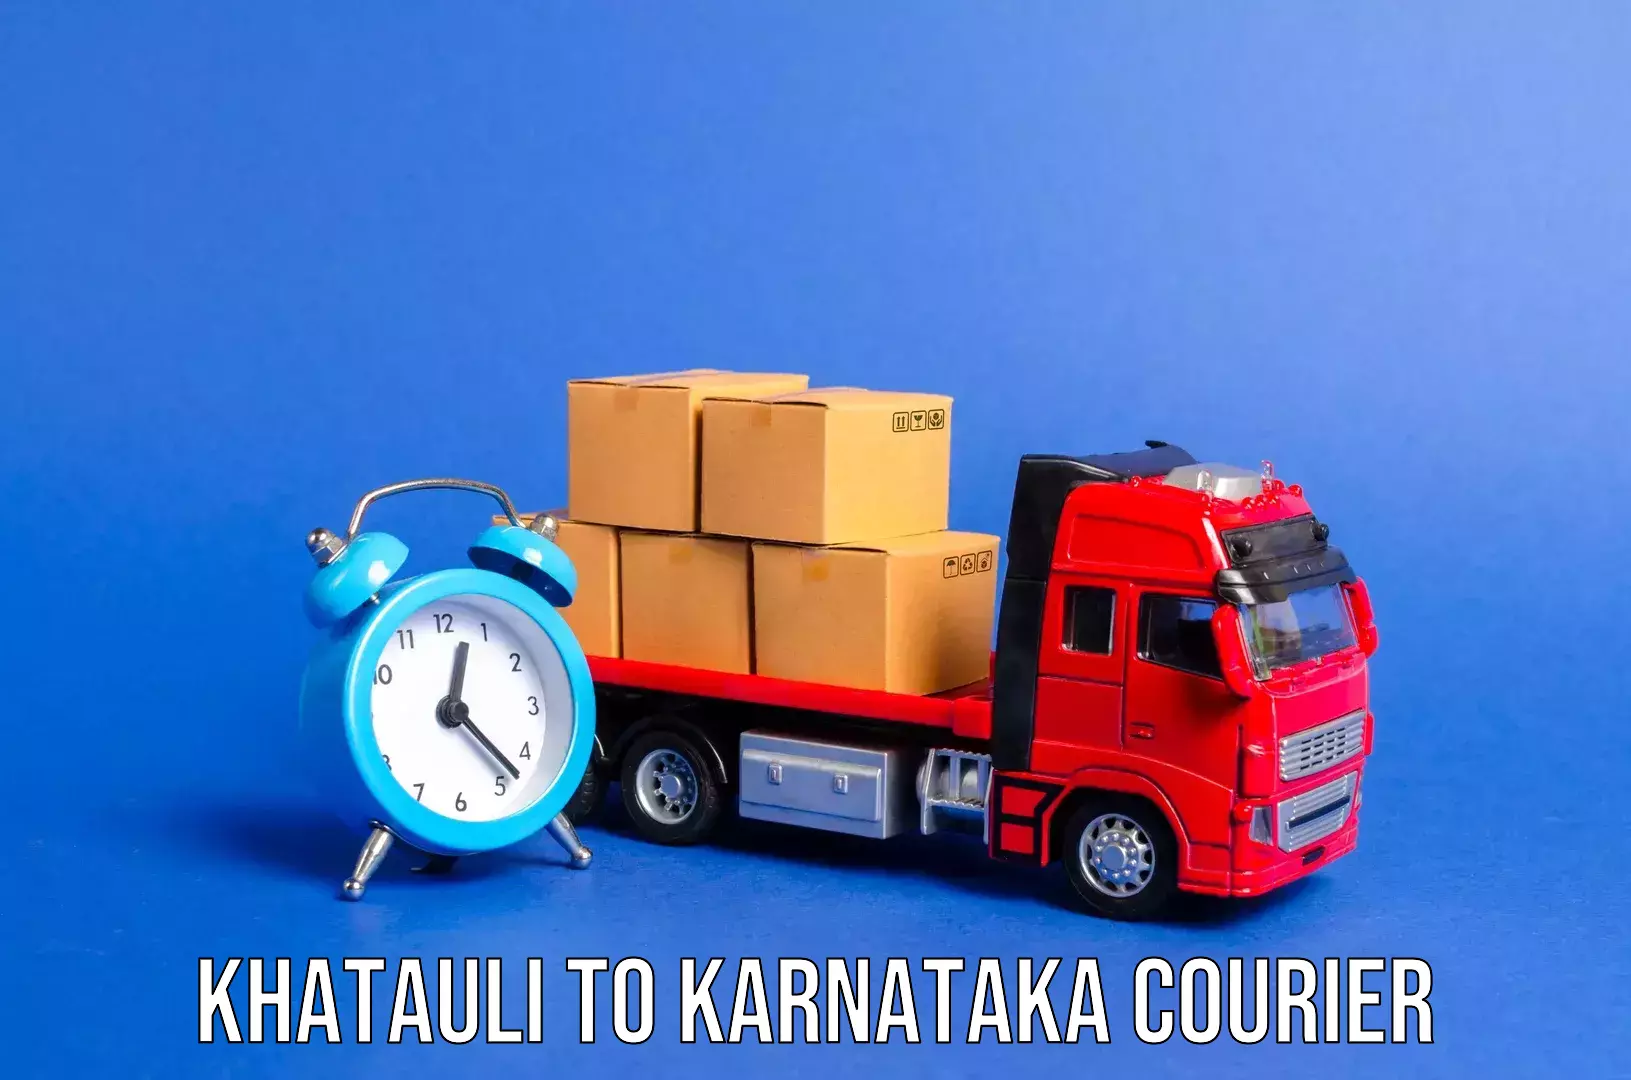 Hassle-free luggage shipping Khatauli to Bhatkal